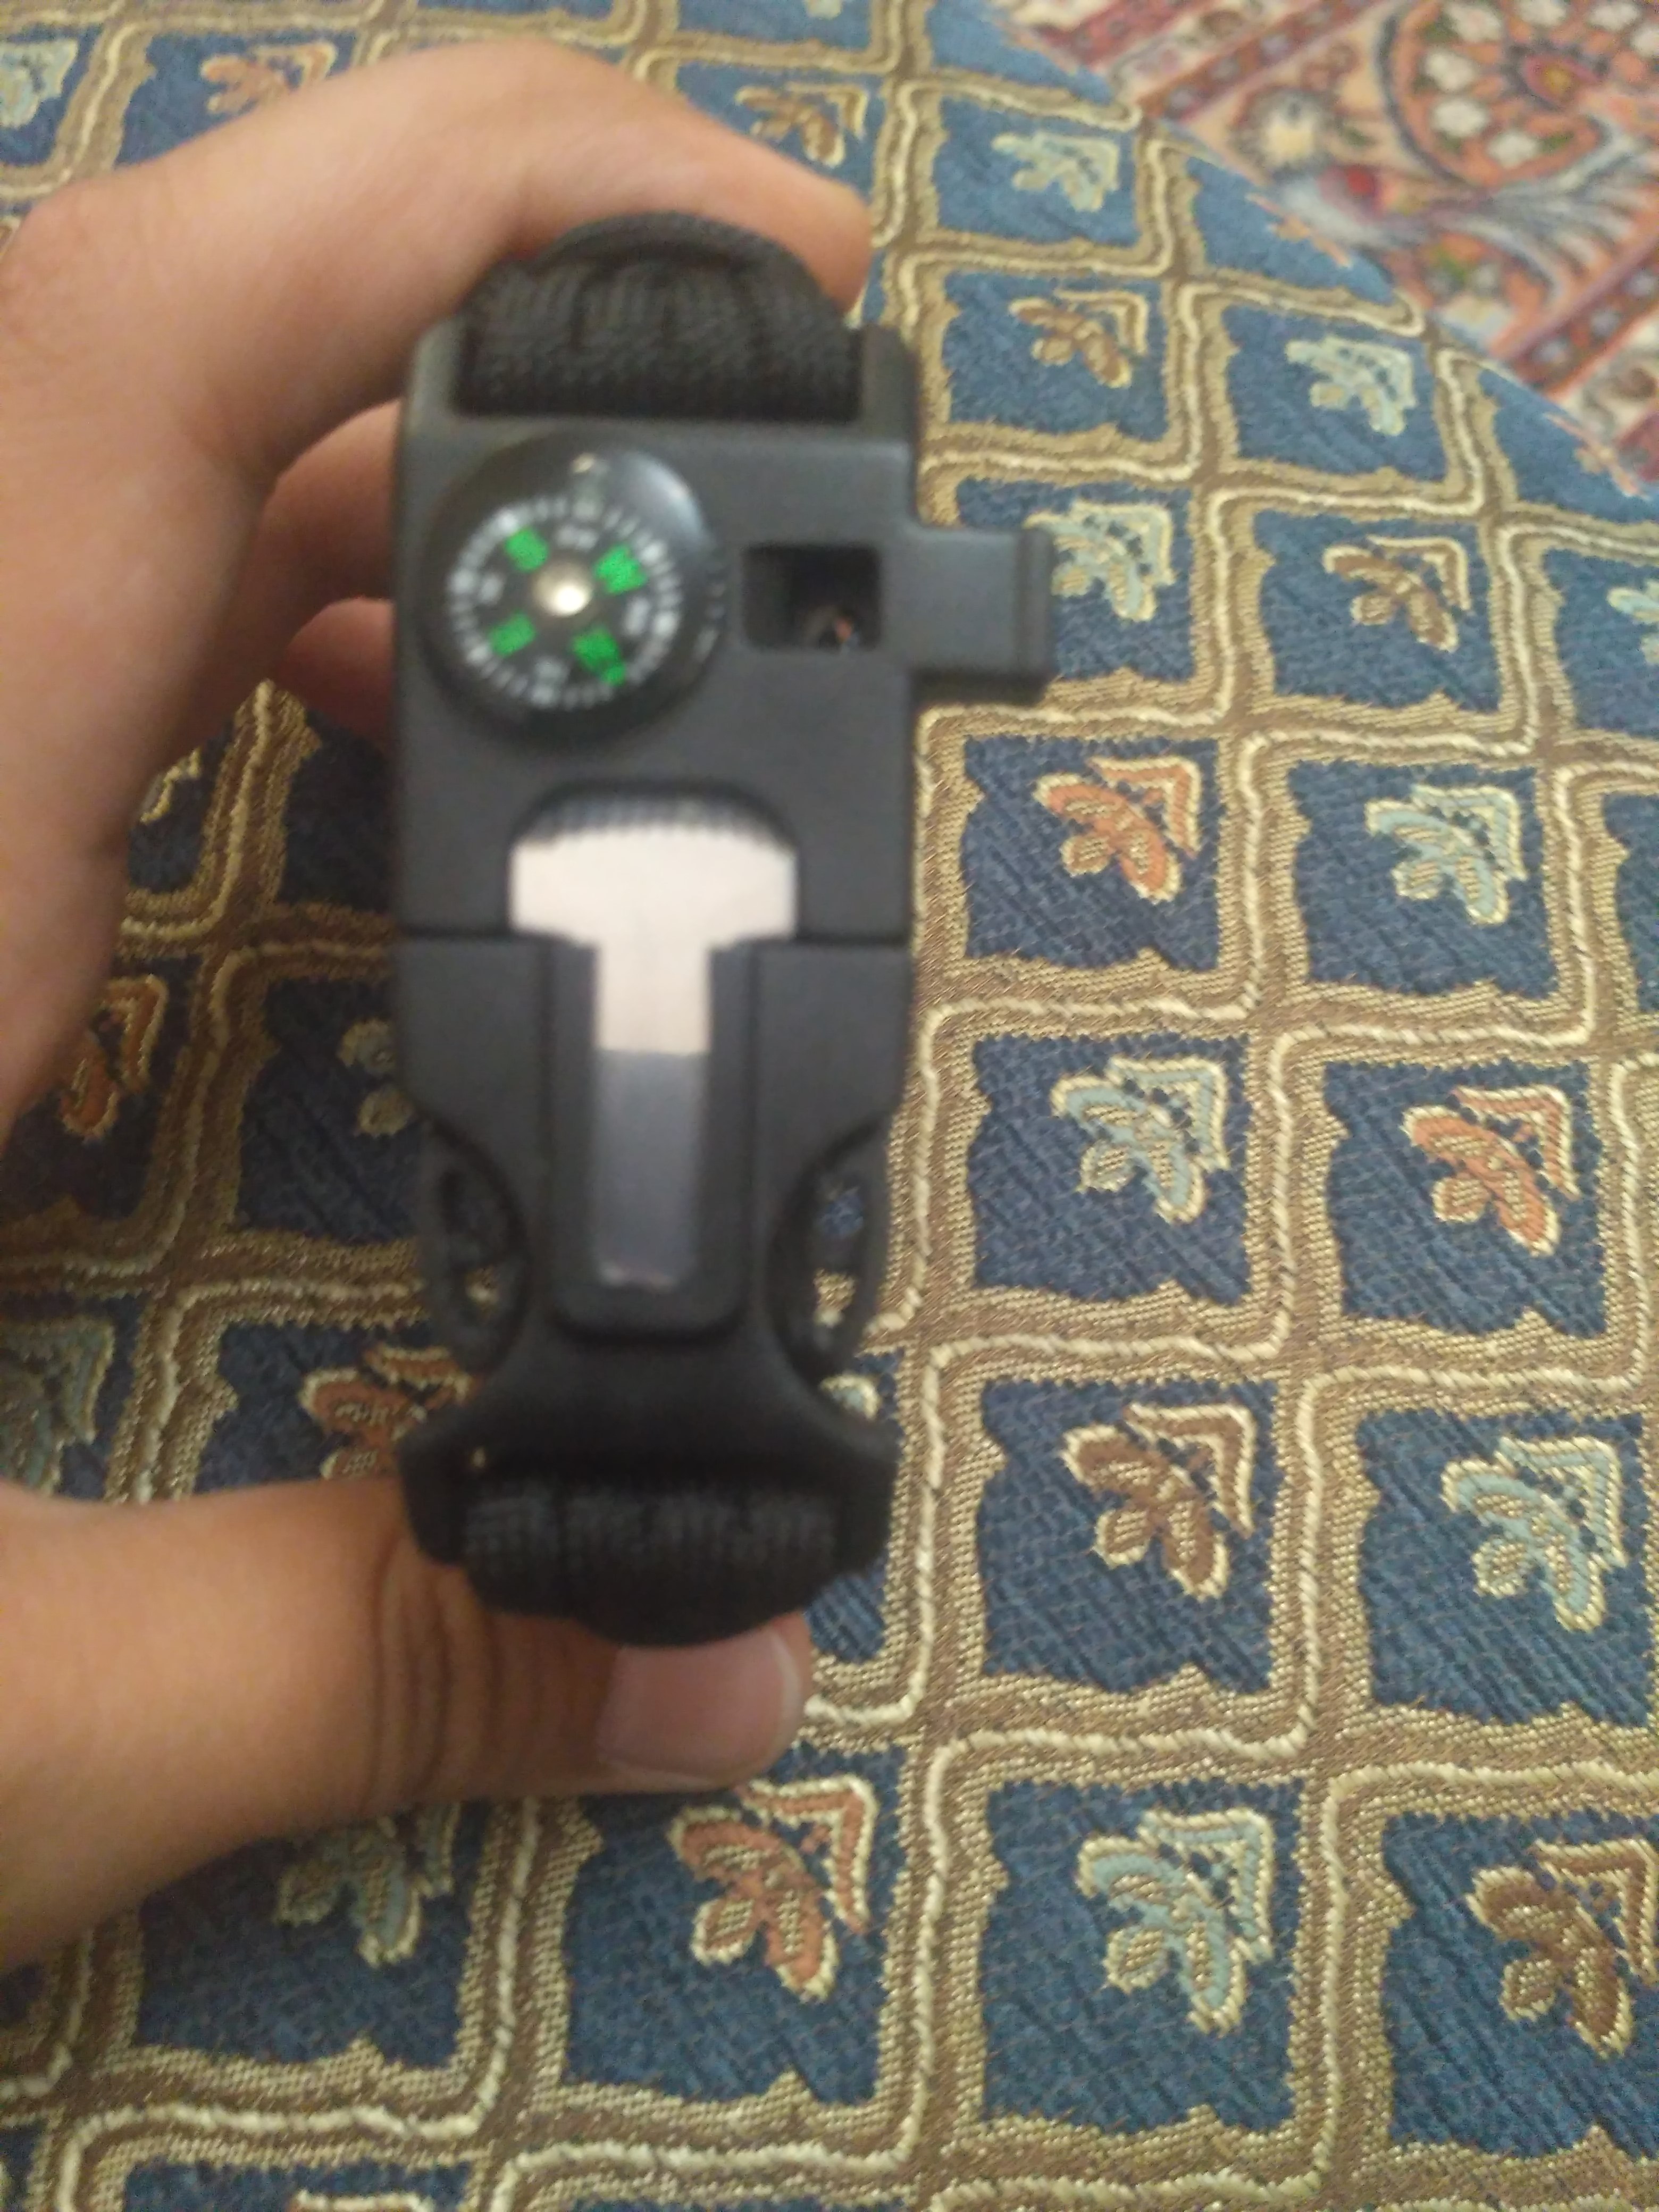 دستبند پاراکورد مدل Tactical 1